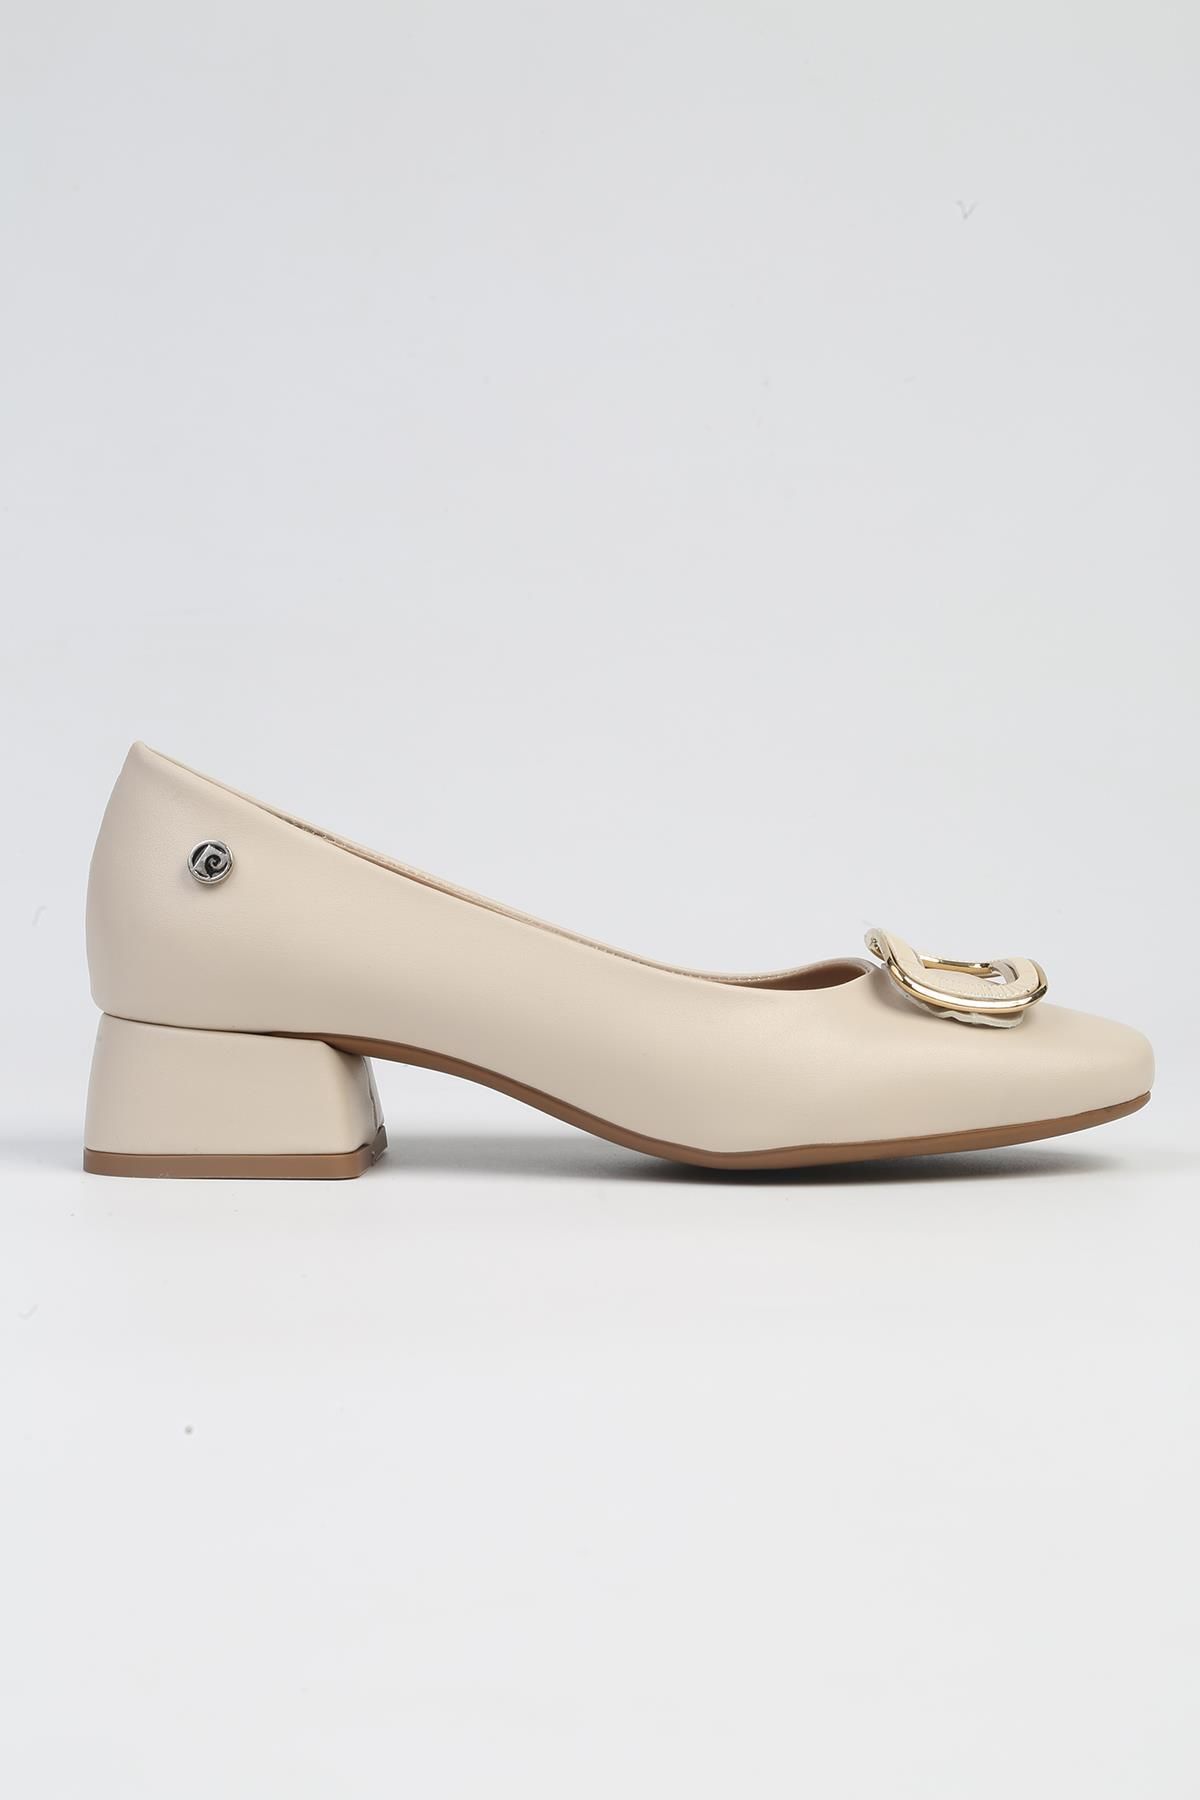 Pierre Cardin ® | PC-53109- 3592 Krem Cilt-Kadın Kısa Topuklu Ayakkabı